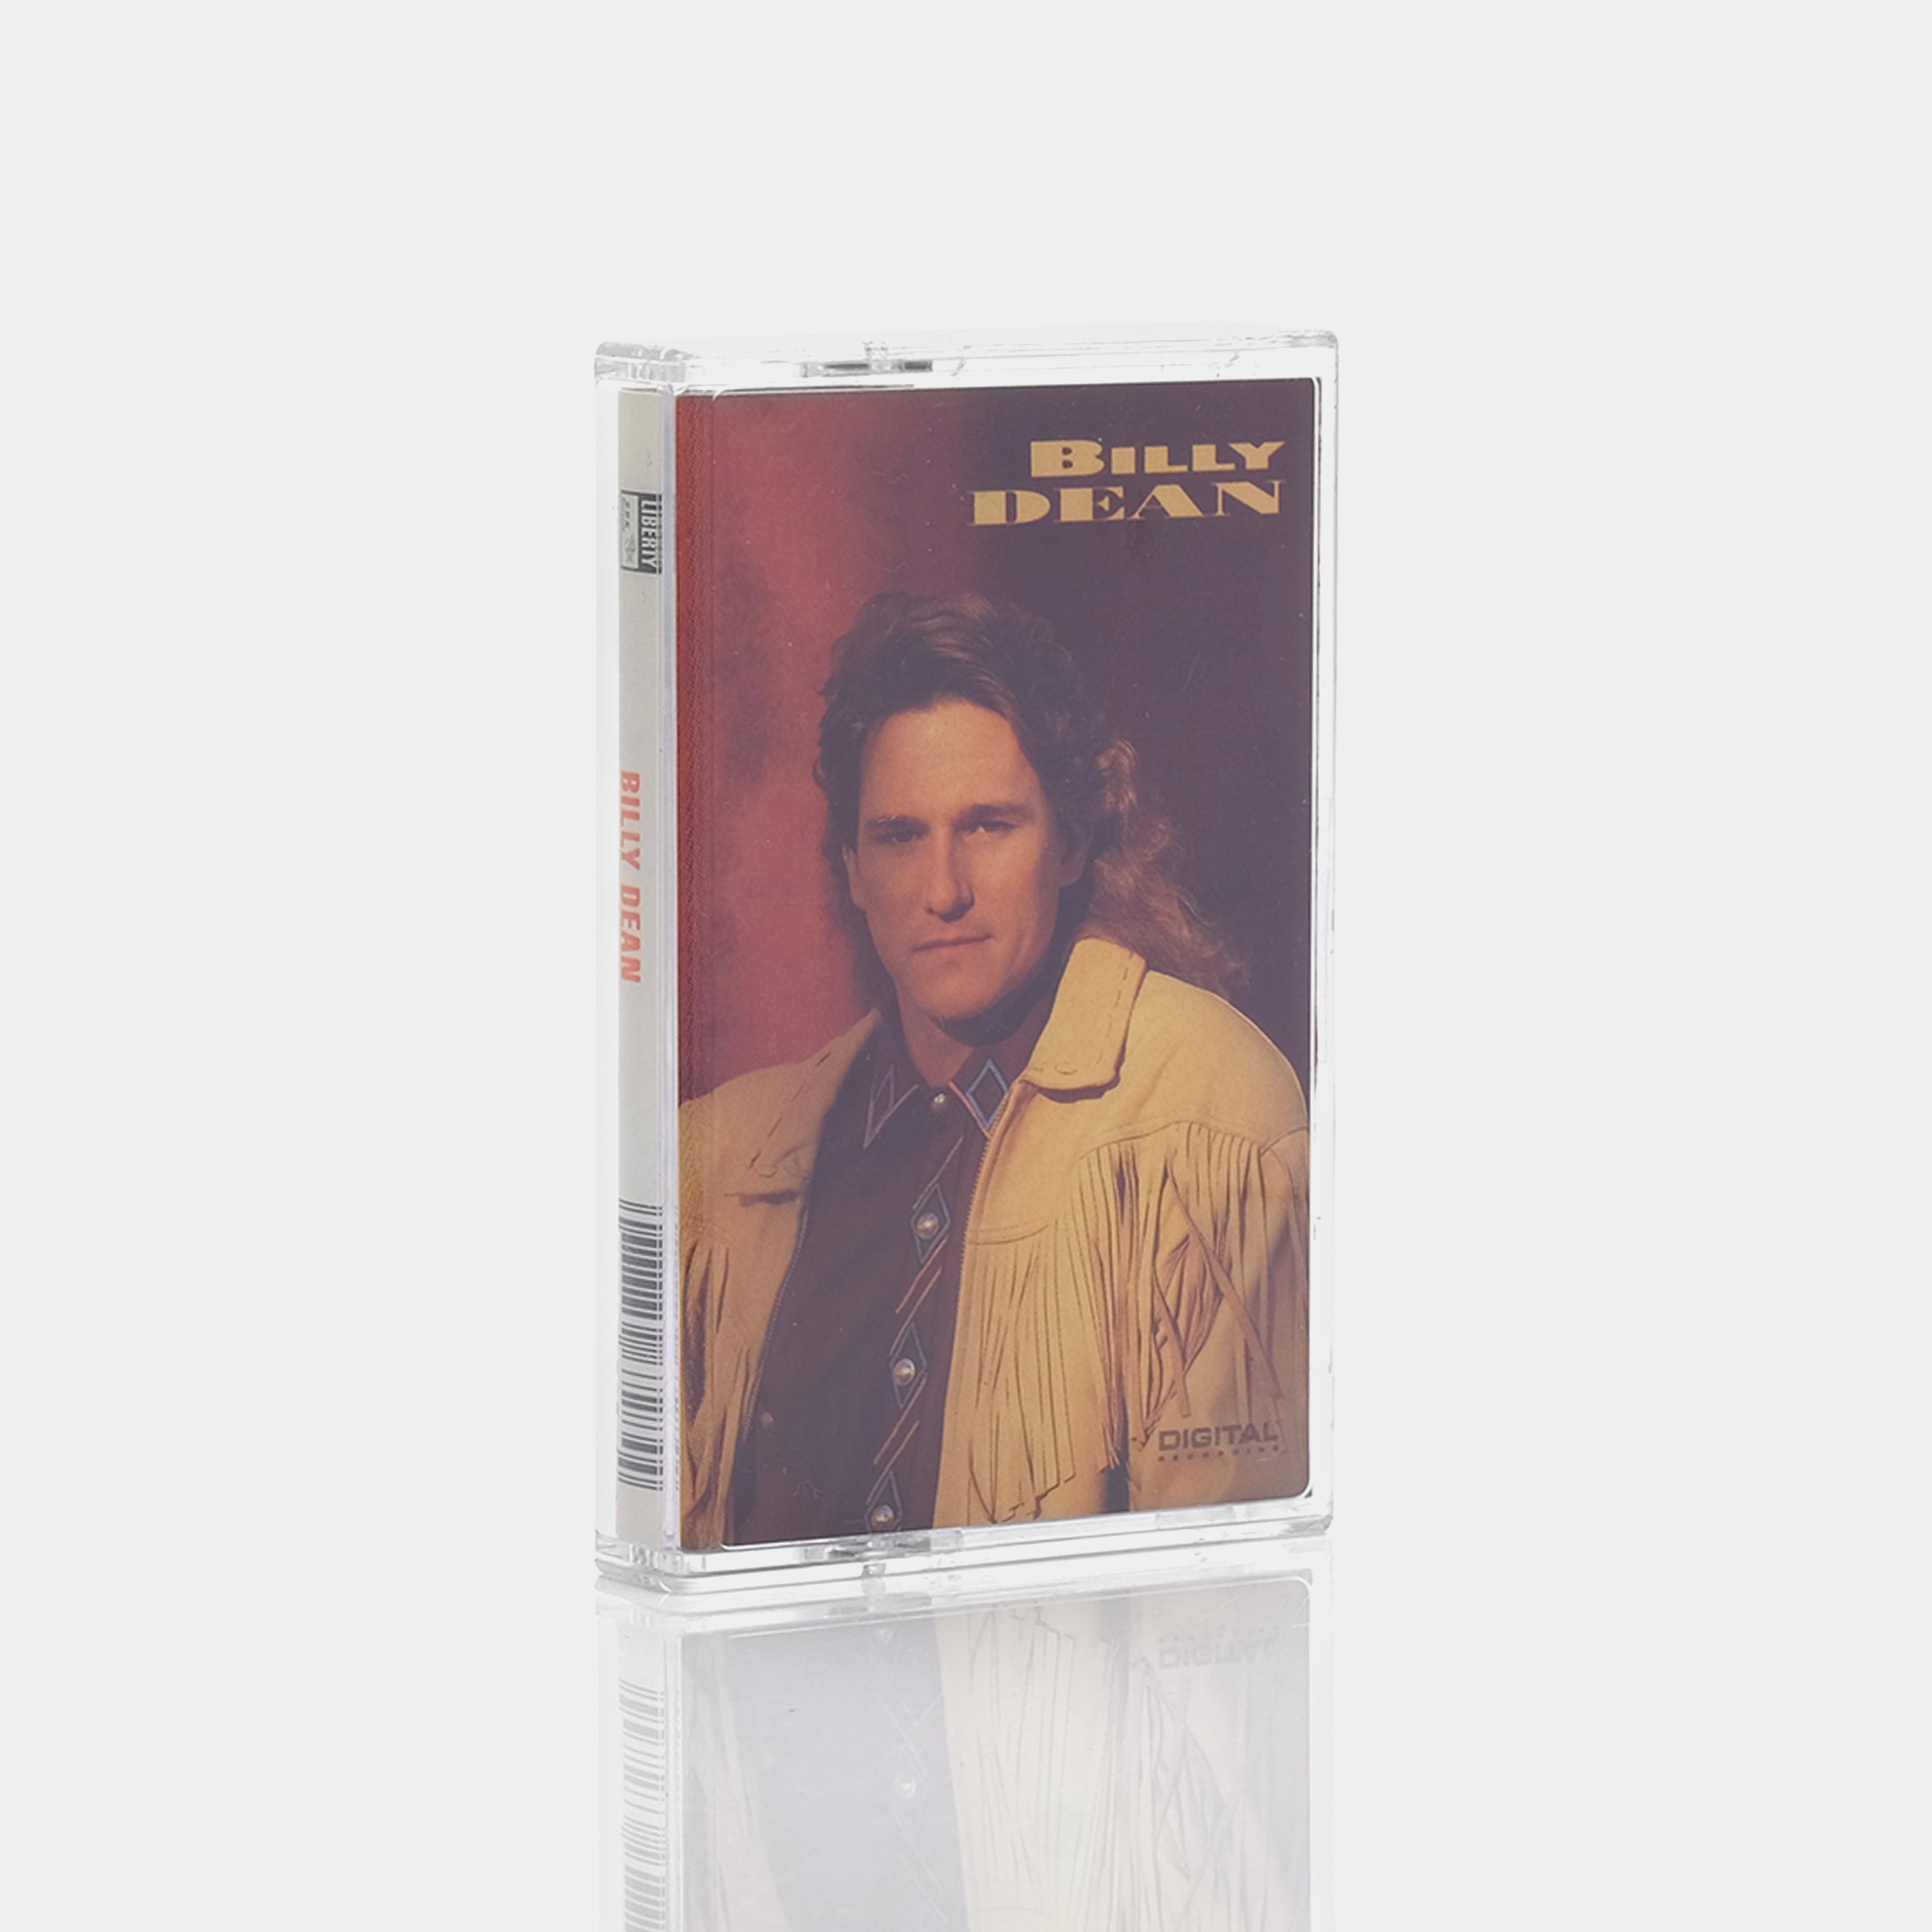 Billy Dean - Billy Dean Cassette Tape